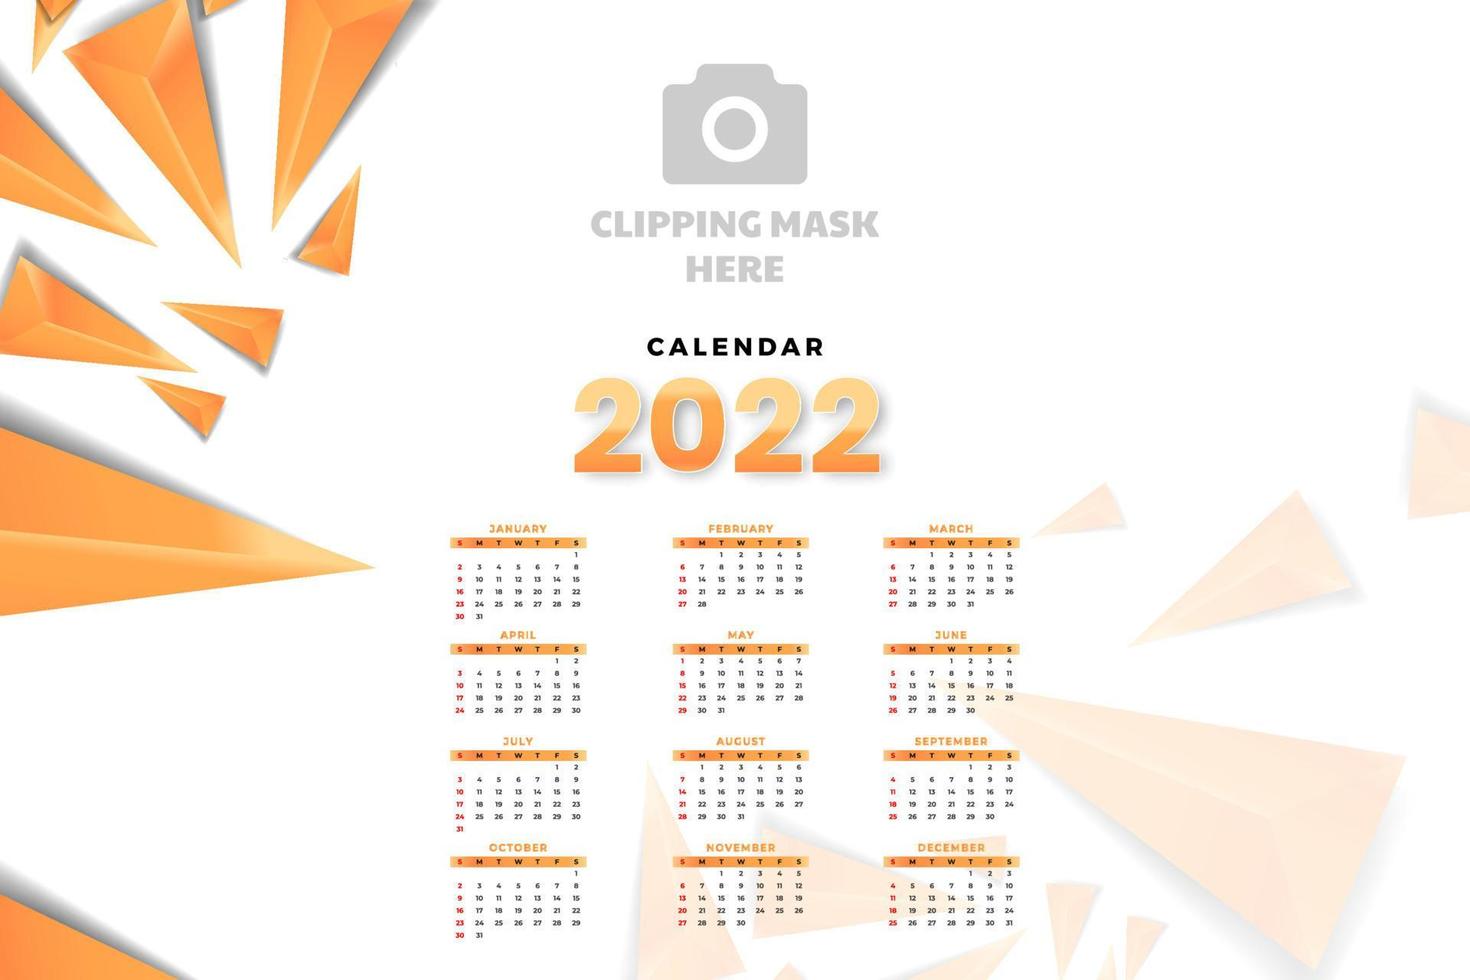 modelo de calendário mensal para 2022 anos. semana começa no domingo. calendário de parede em estilo minimalista. vetor